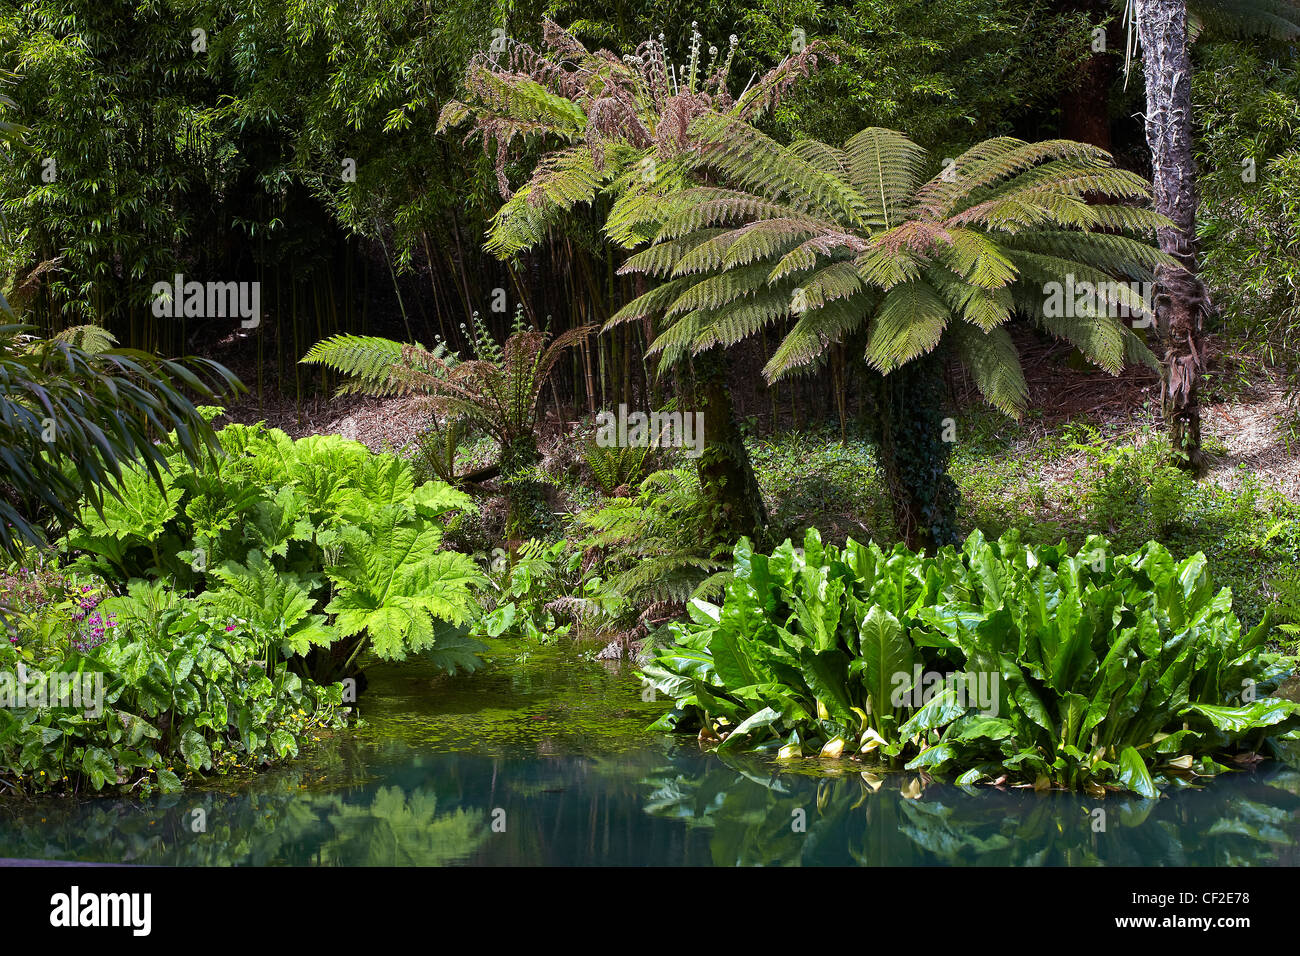 Exotische Pflanzen in The Jungle-Bereich von The Lost Gardens of Heligan. Stockfoto